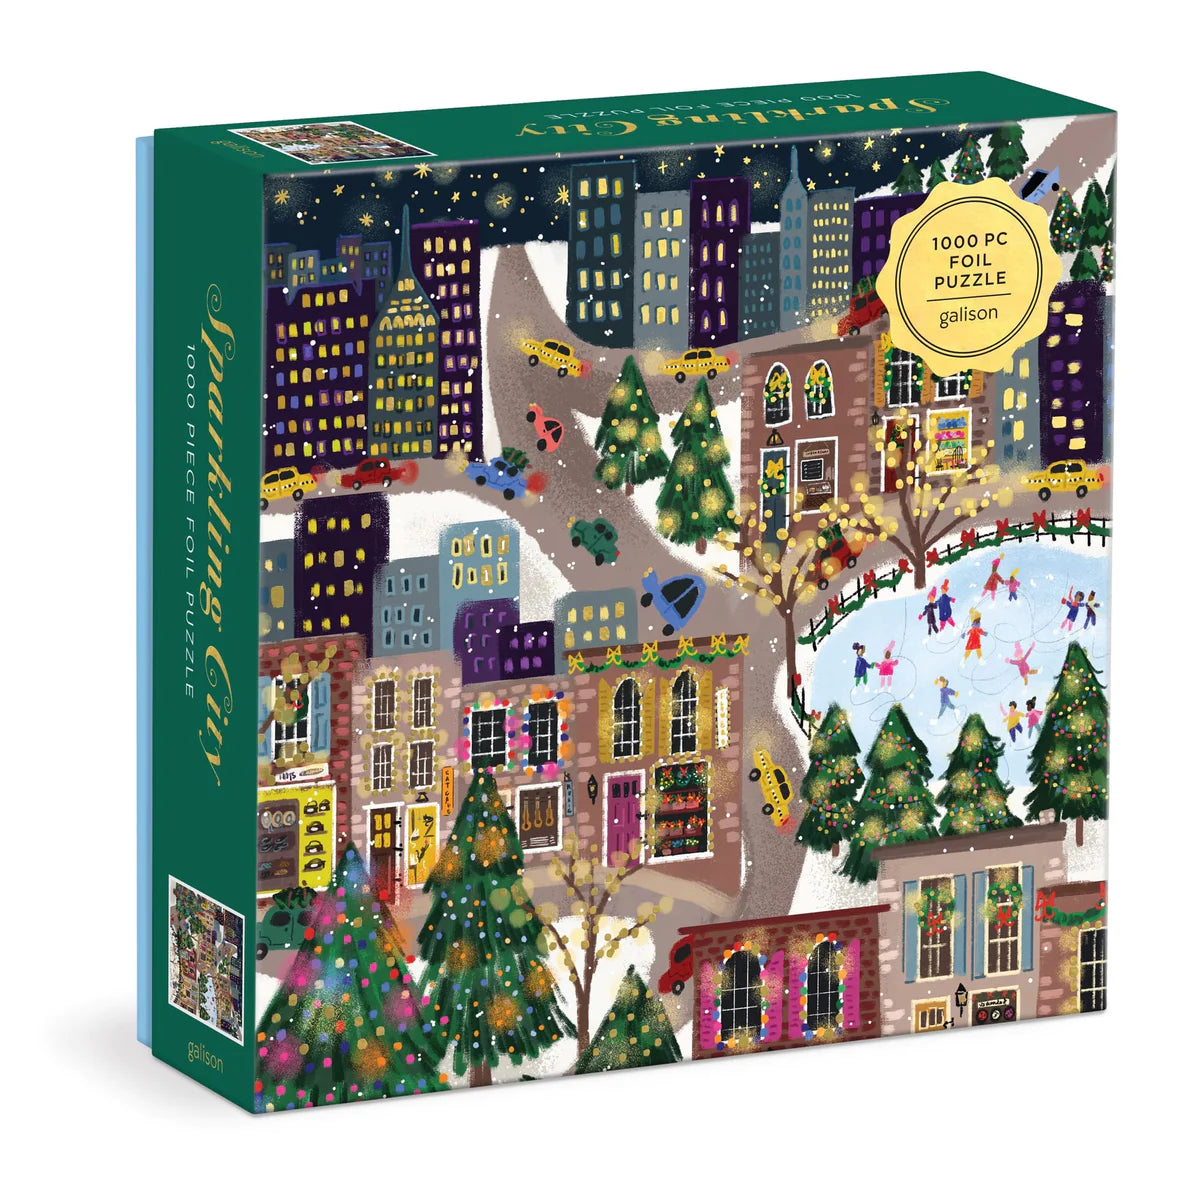 Galison | Joy Laforme Sparkling City 1000pc Foil Puzzle In a Square Box